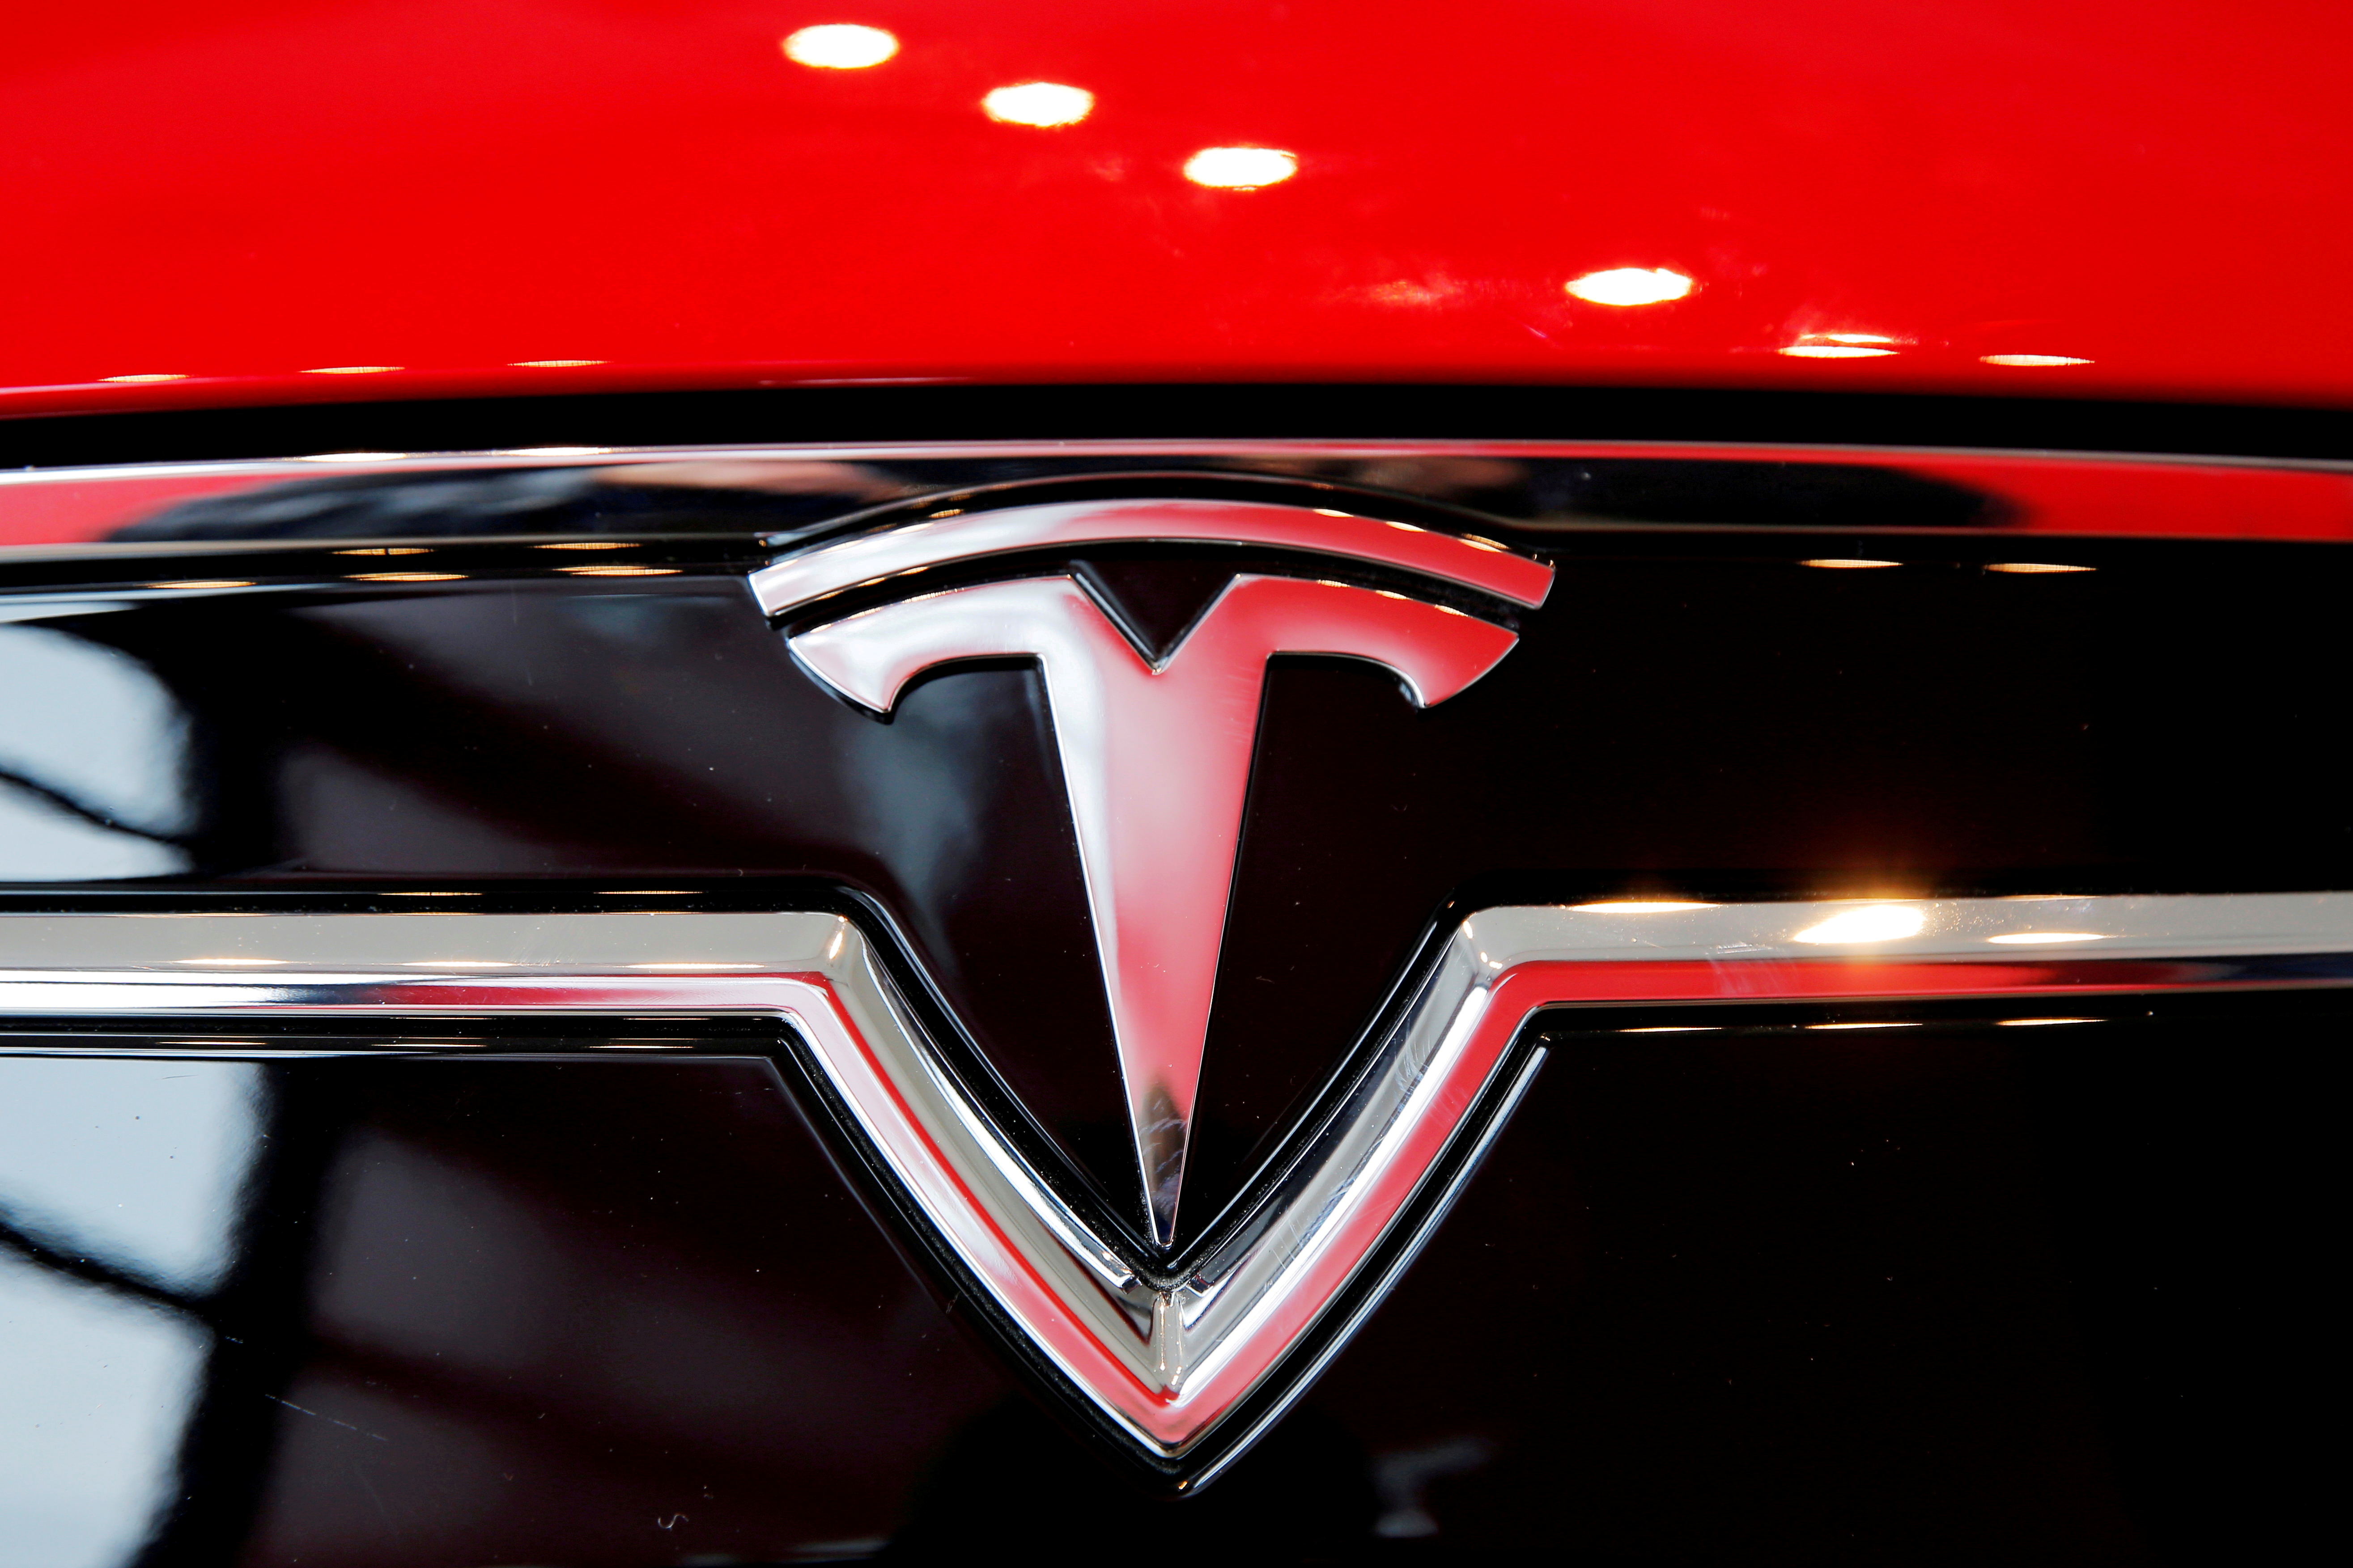 Tesla lanzará Model S Plaid de alta gama para competir con Mercedes y Porsche